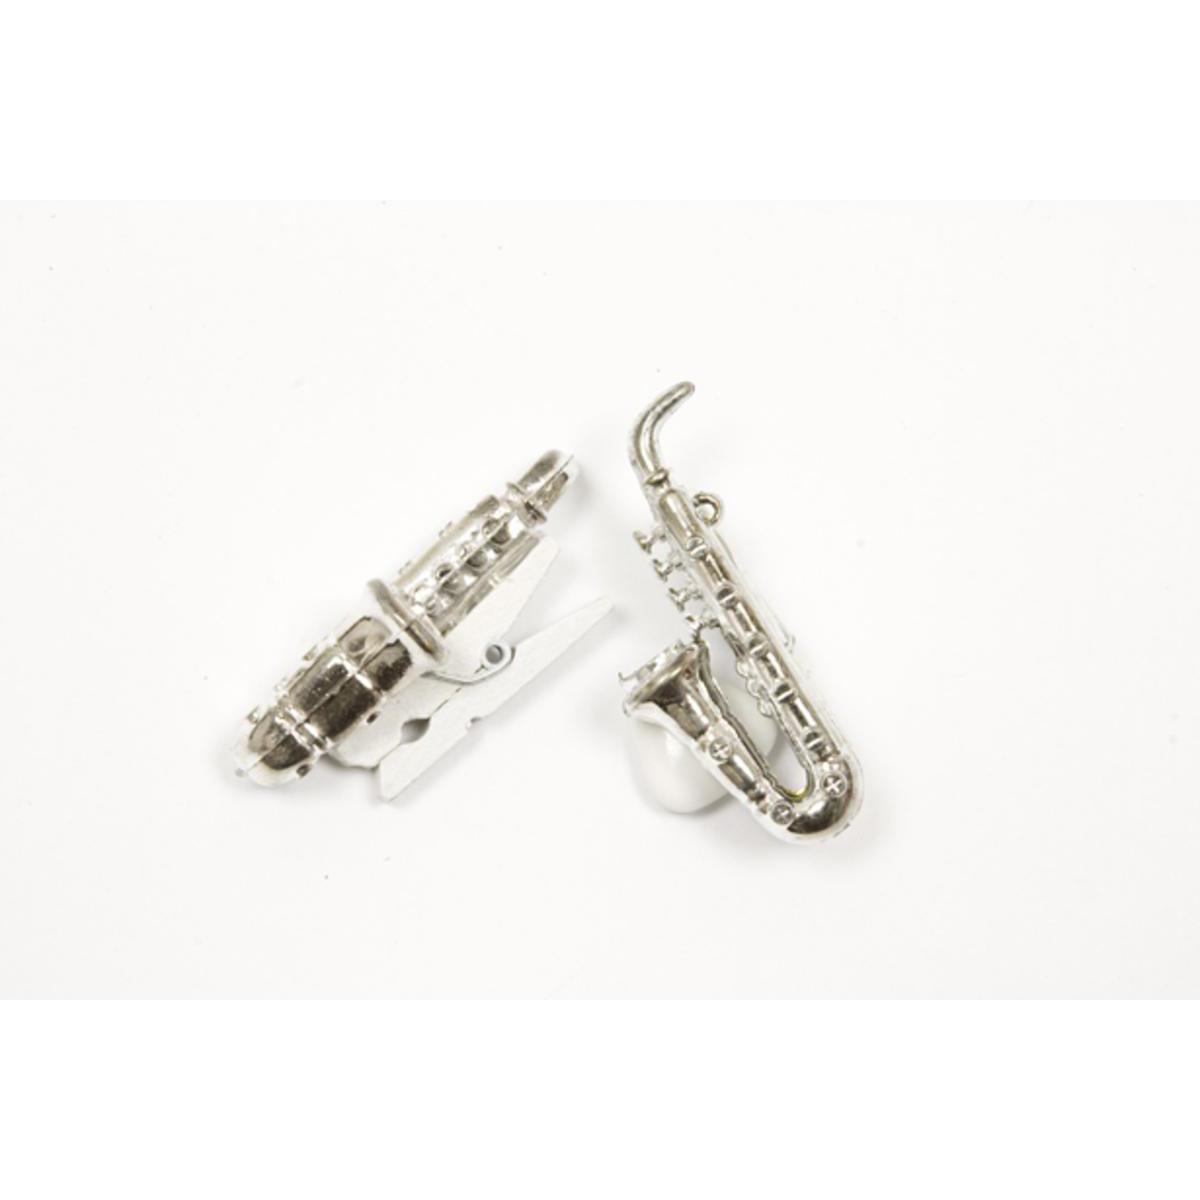 Lot de 5 saxophones sur pince - Bois et plastique - 1,5 x 4,3 cm - Argent